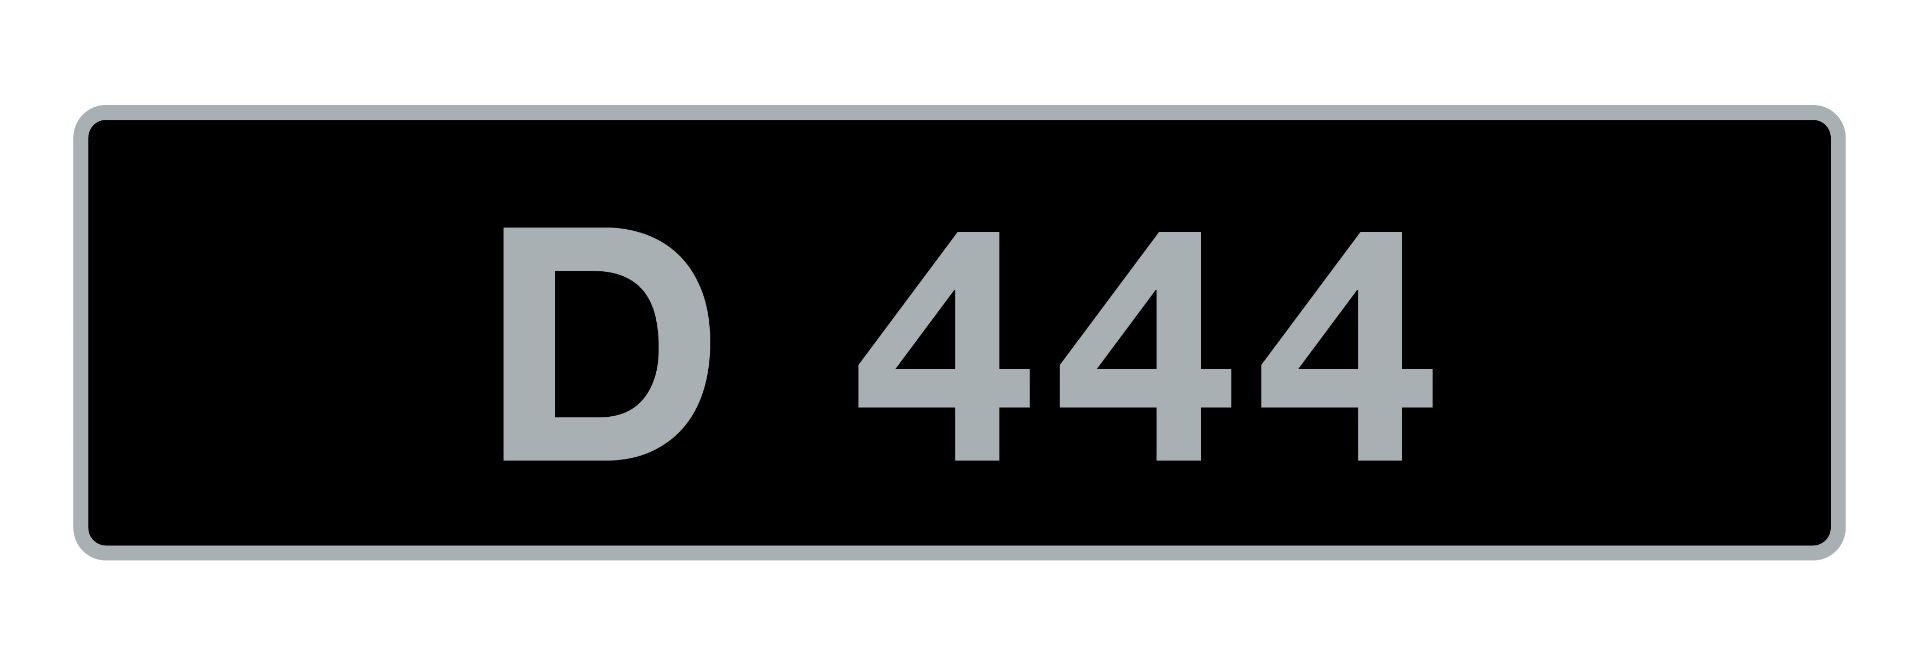 'D 444' UK Vehicle Registration Number,